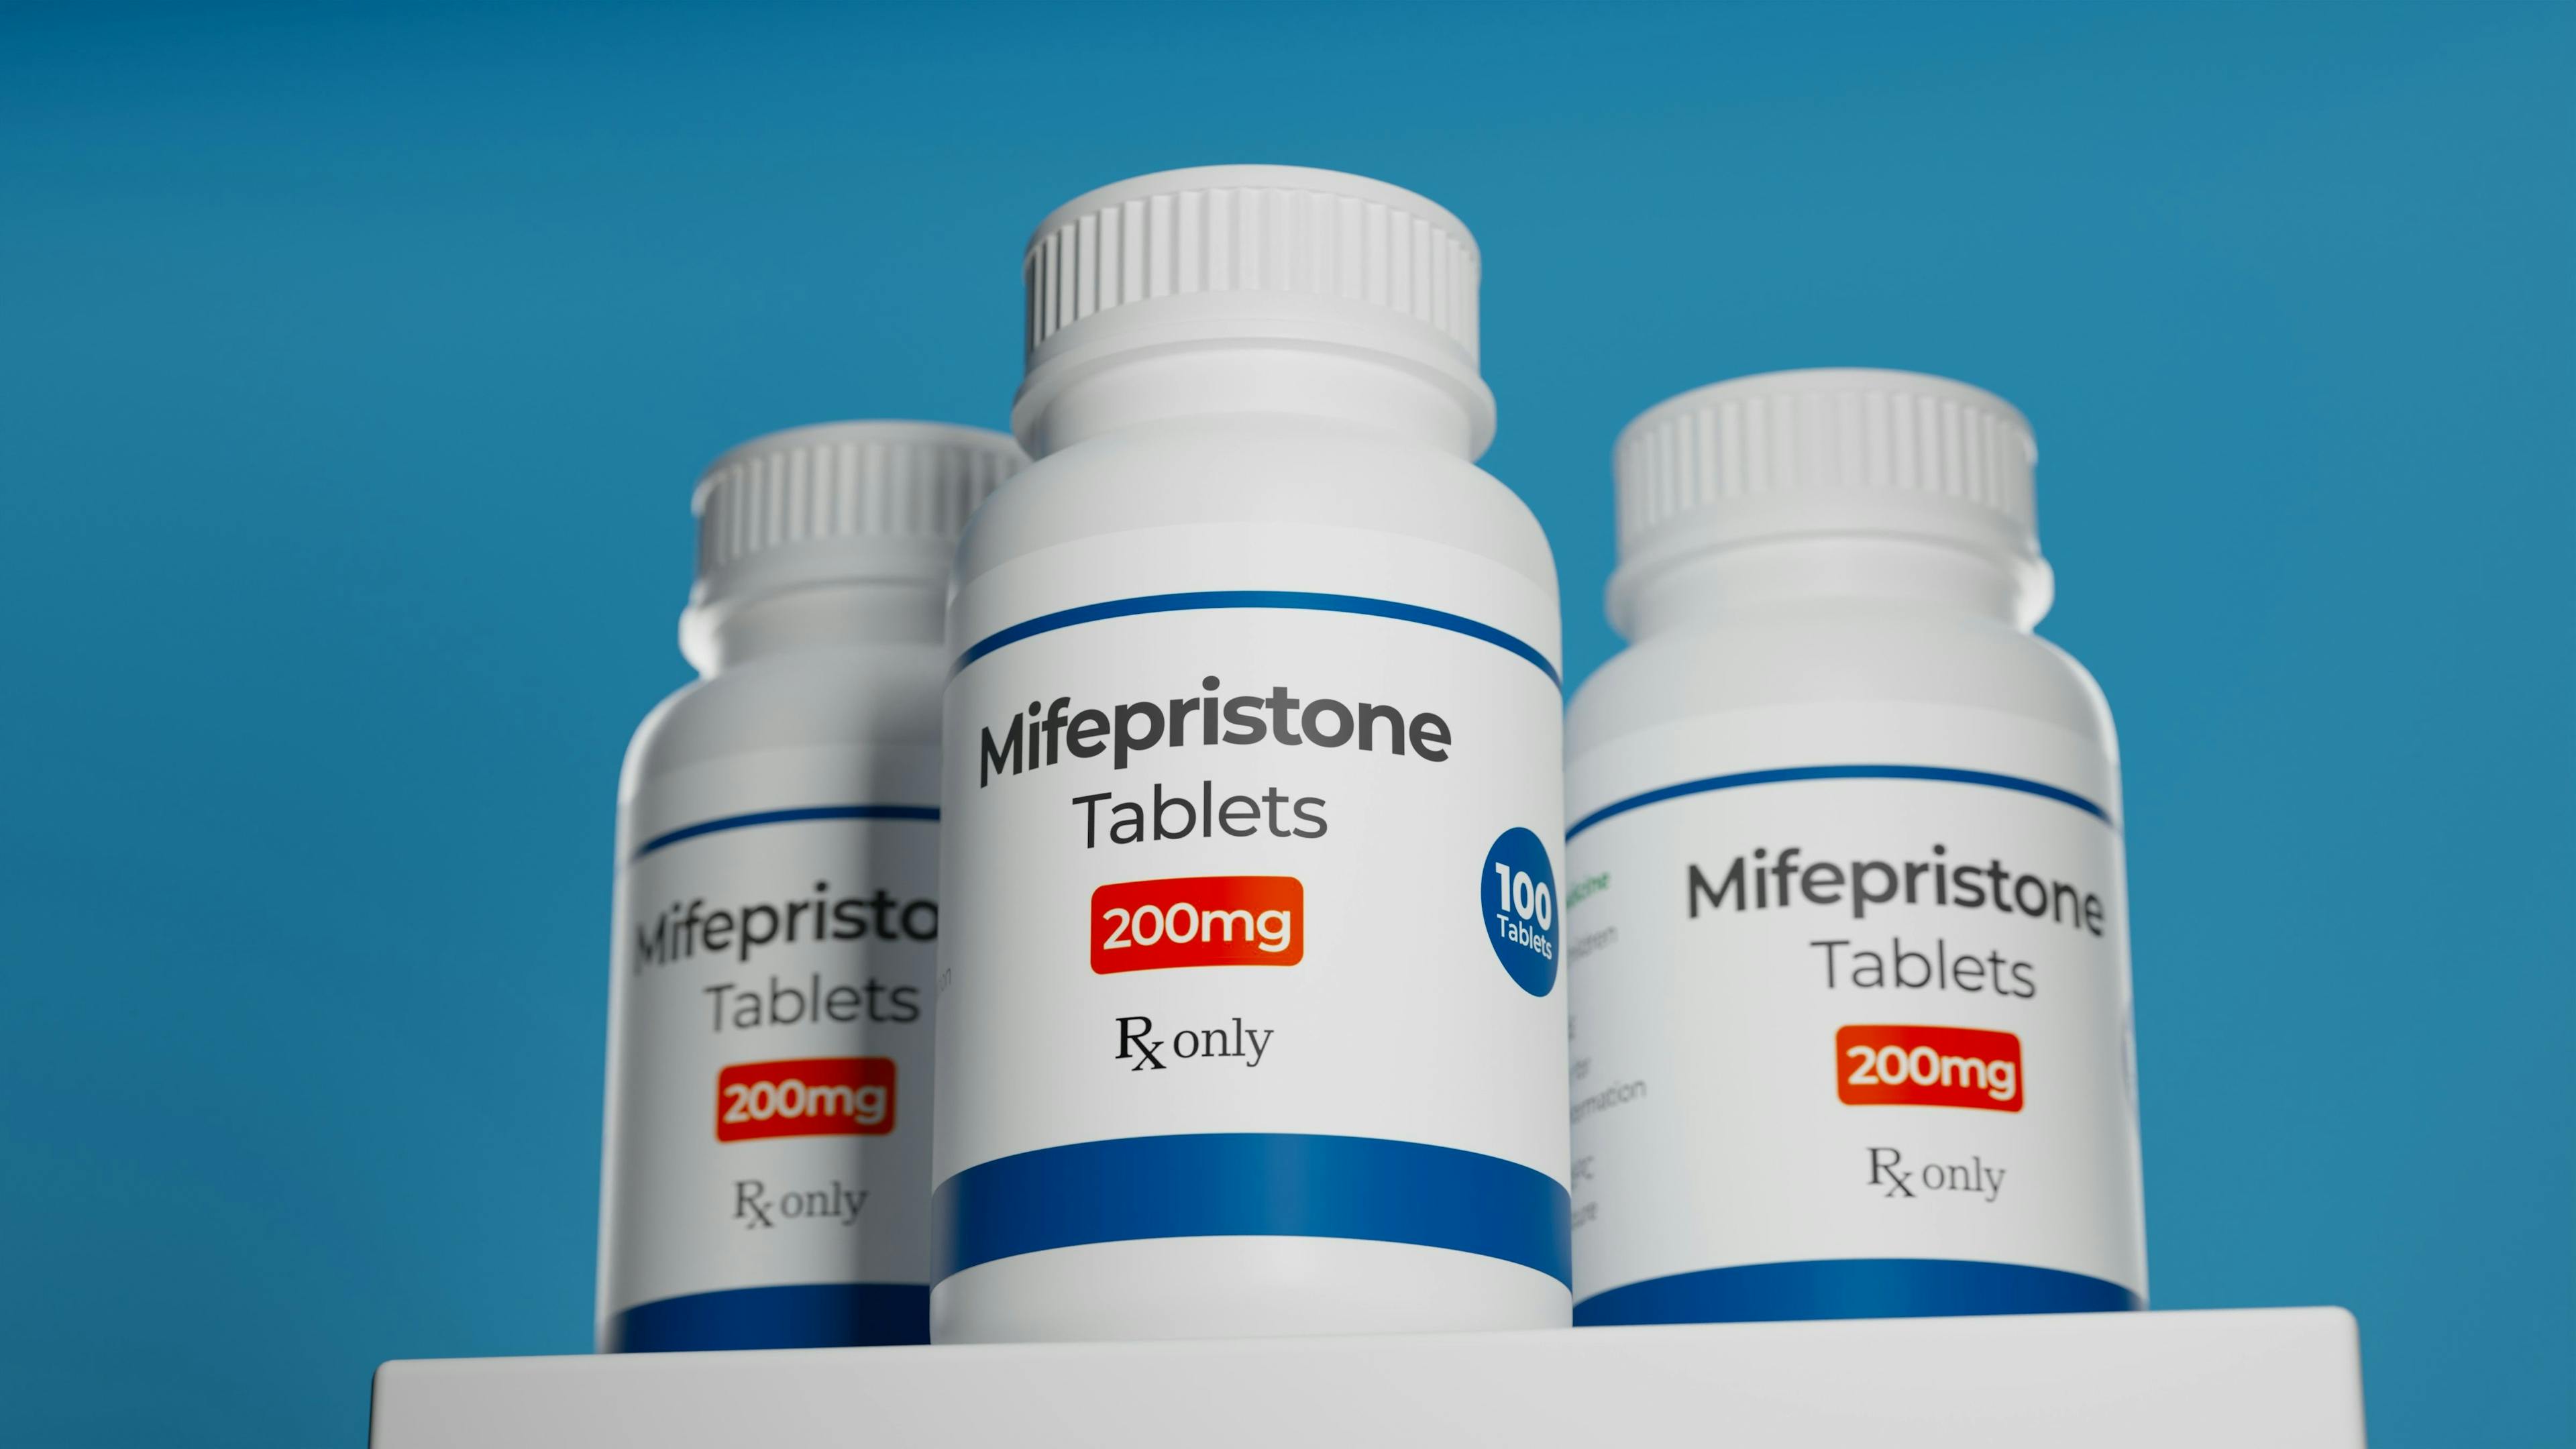 Mifepristone tablets in bottles / Carl - stock.adobe.com